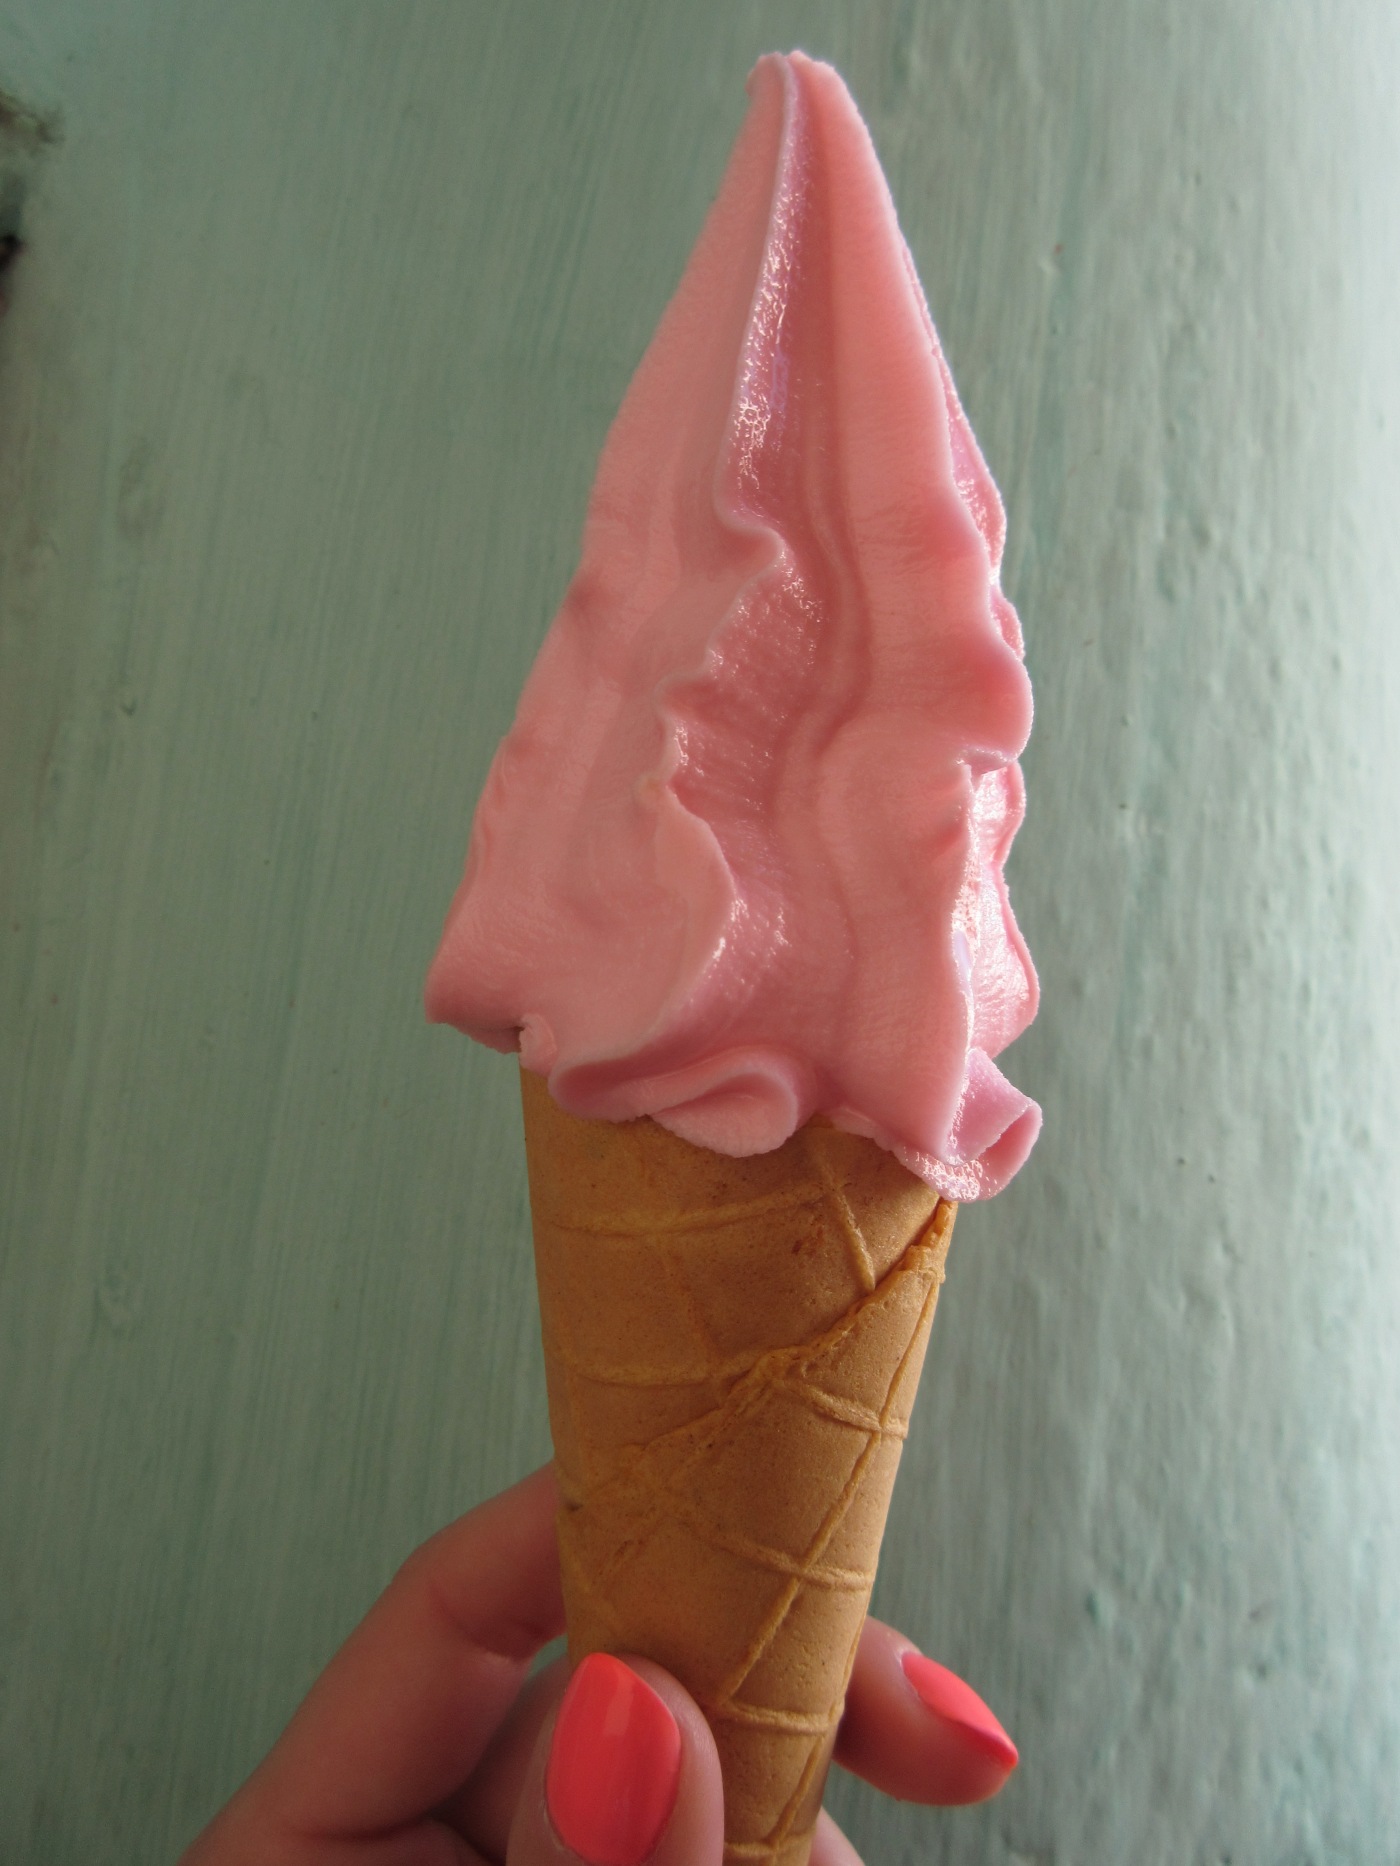 Fresh Fresa Ice Cream in Pinar del Río, Cuba - Fresa Means Strawberry in Spanish